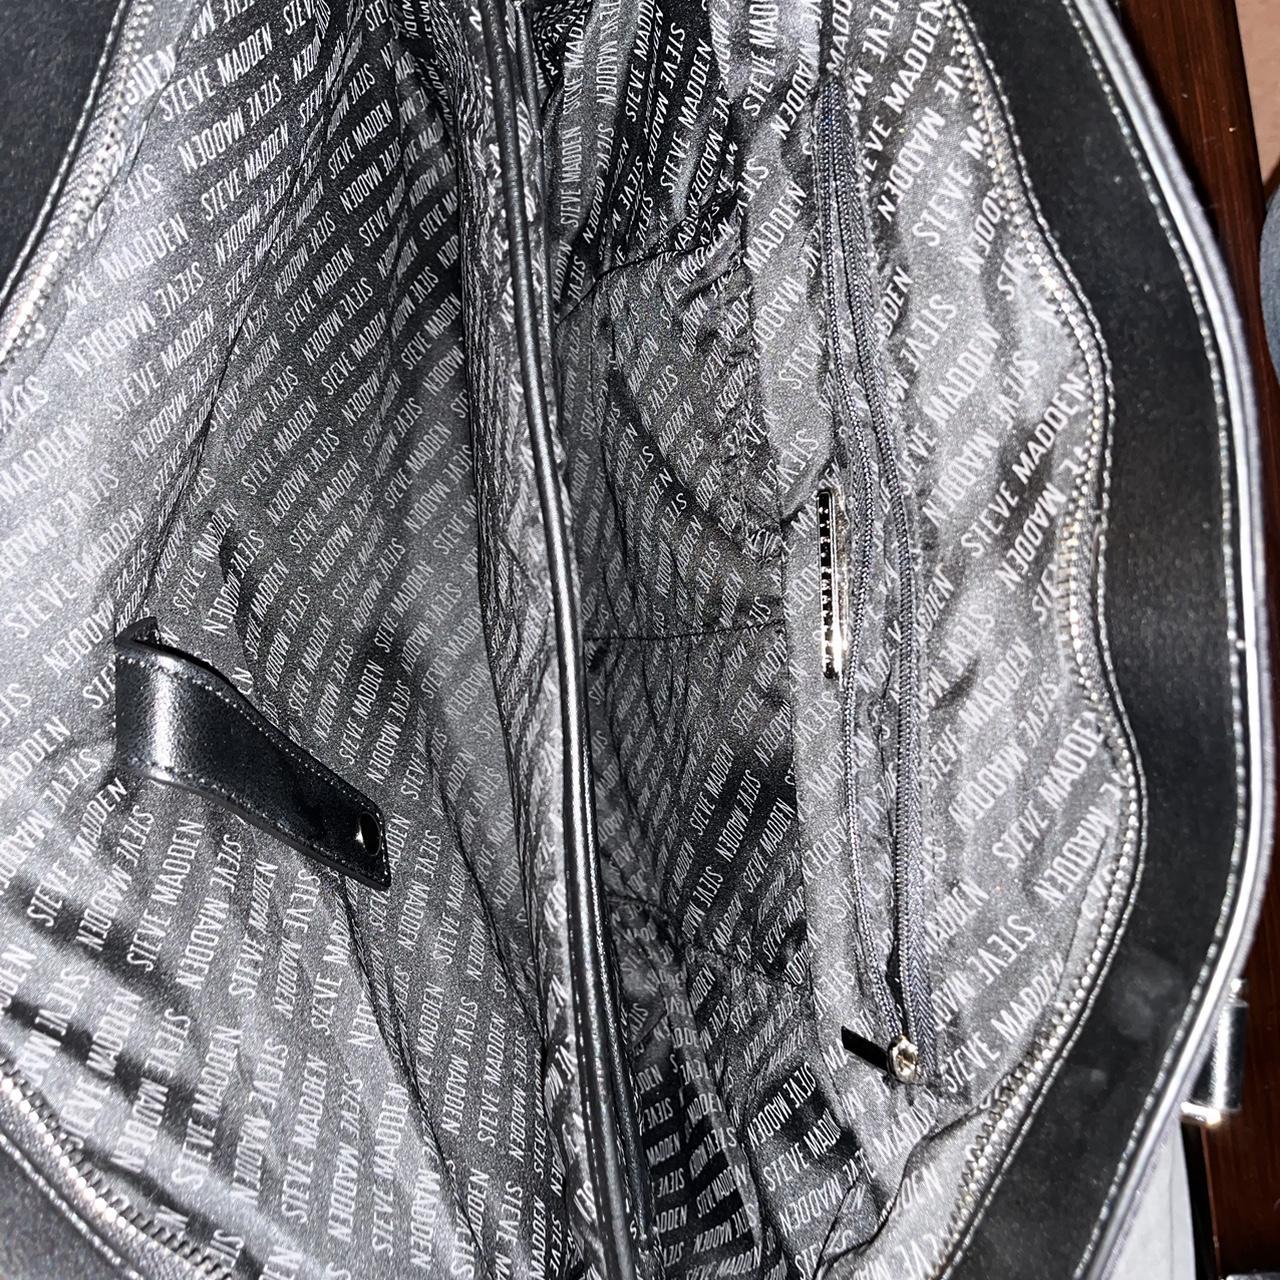 Black Steve Madden duffle bag. Brand new never worn - Depop